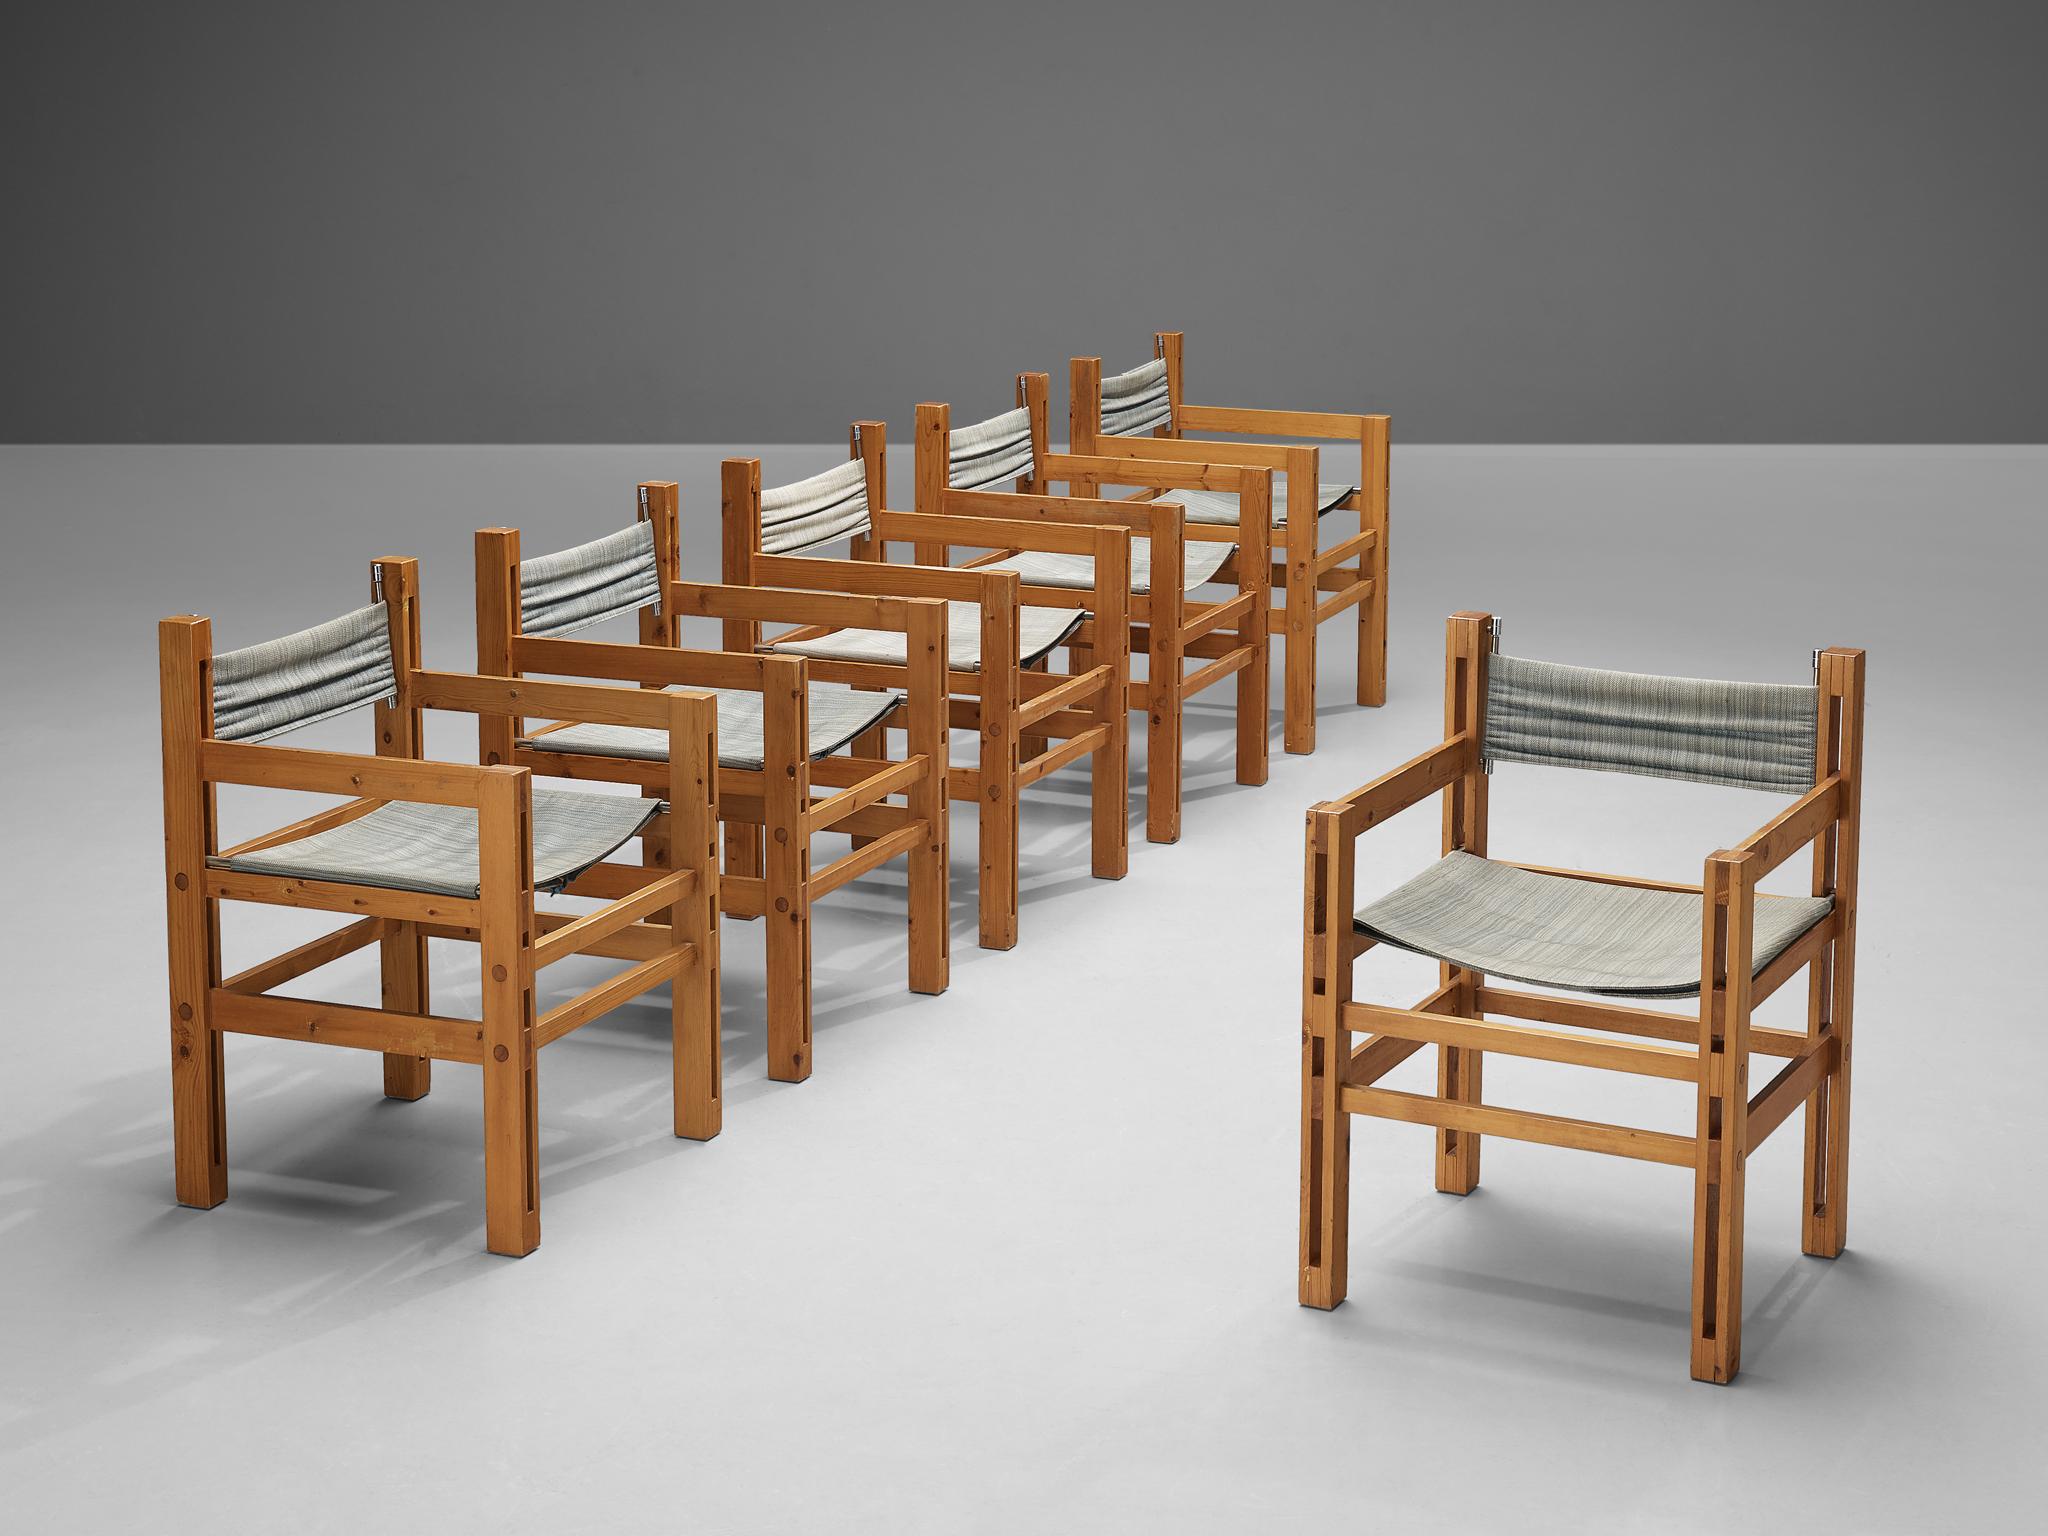 Ensemble de six fauteuils, pin et tissu, Italie, années 1970.

Cet ensemble de six fauteuils italiens est strict et pur. Les chaises sont dotées d'un cadre architectural en bois de pin, constitué uniquement de lignes horizontales et verticales. Les